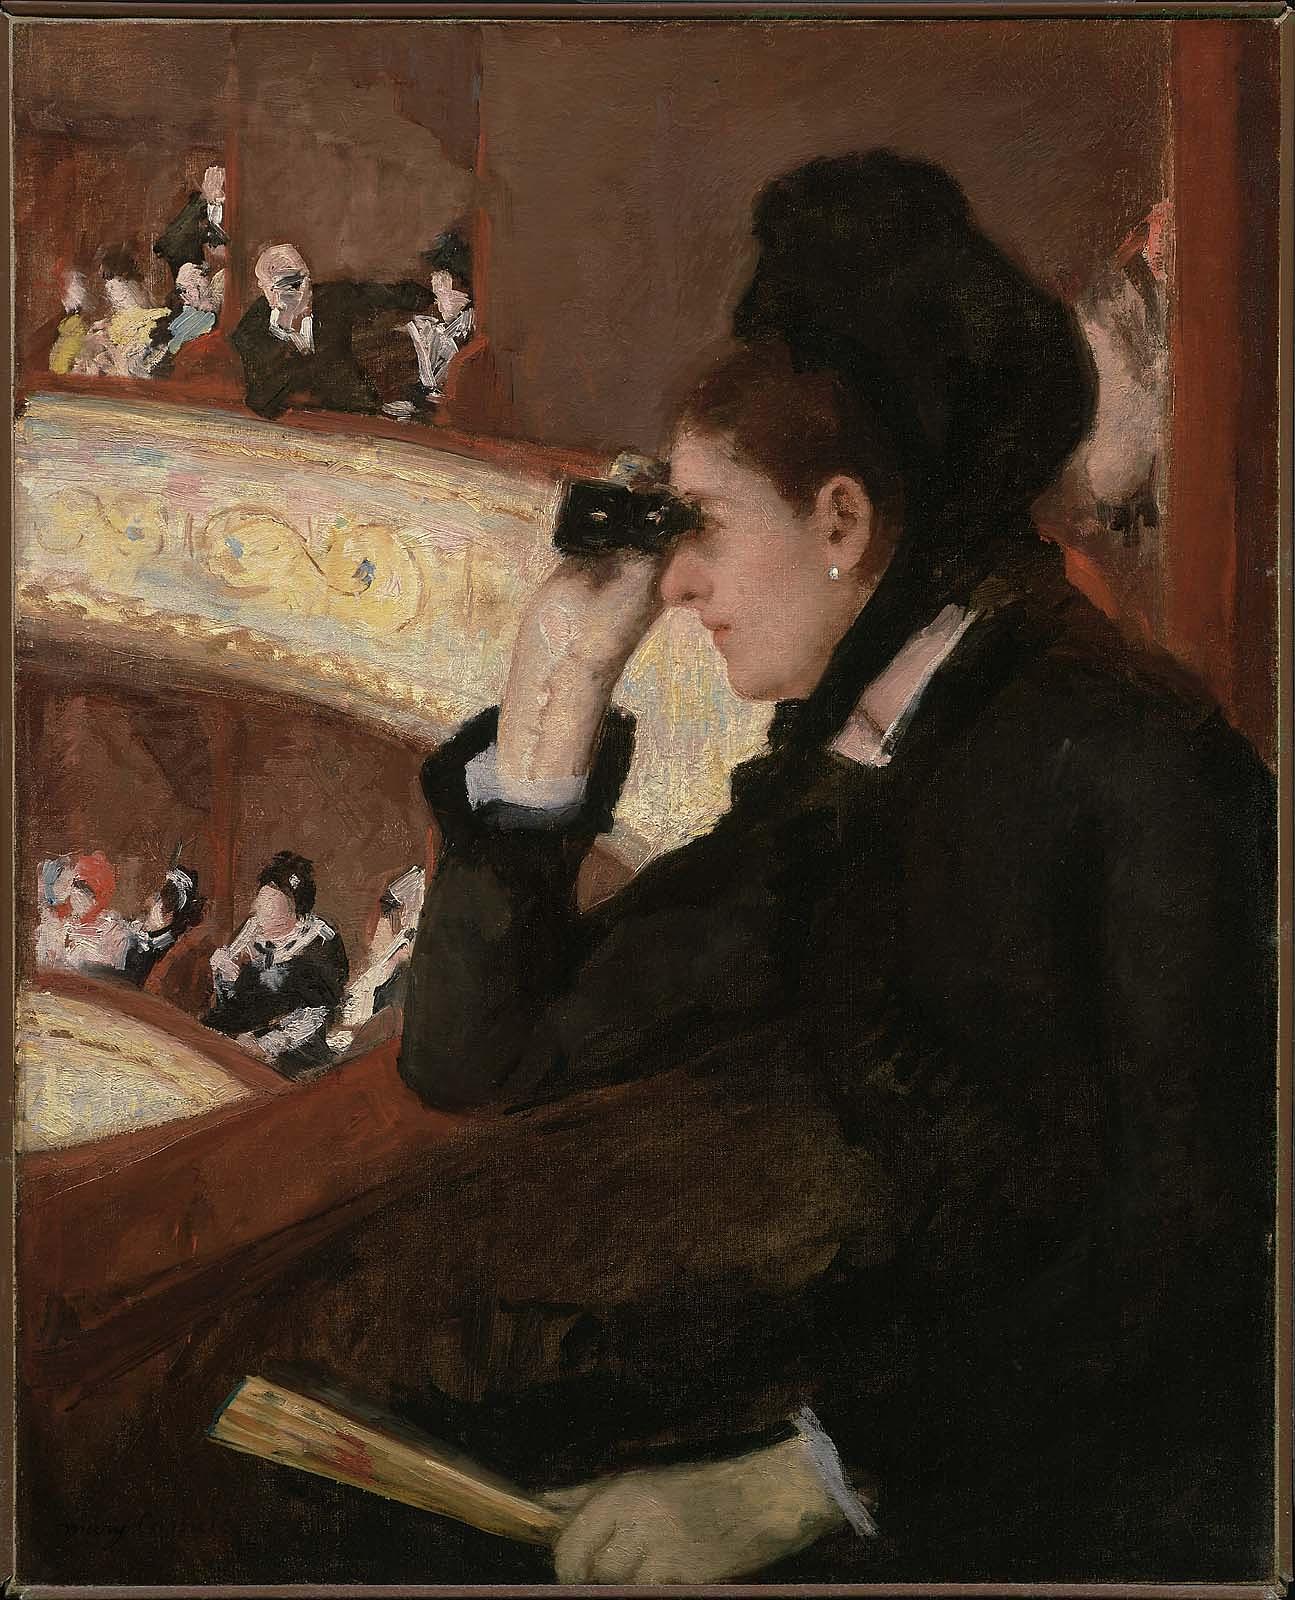 في المقصورة by Mary Cassatt - 1878 م - 81.82 × 66.08 سم 